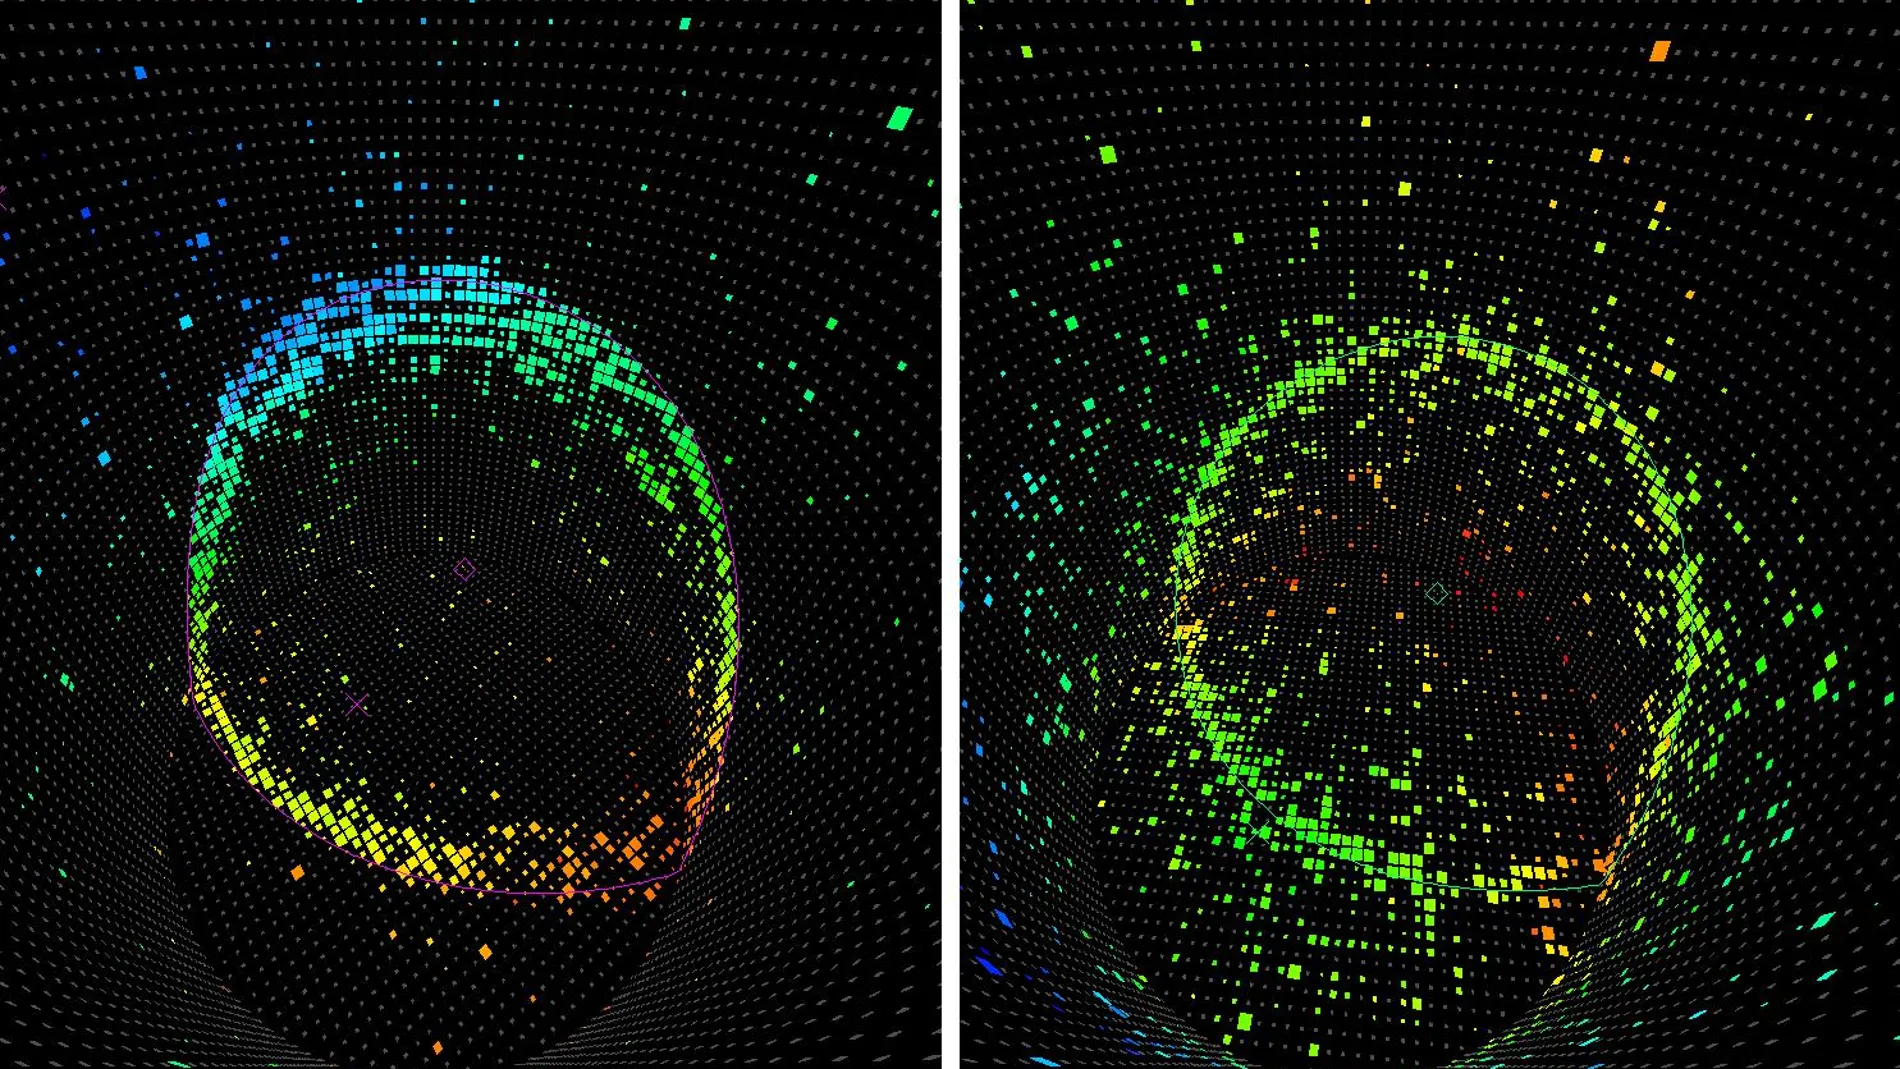 Imagen de la detección de un neutrino muónico (izquierda) y un neutrino electrónico (derecha) en el experimento Super-Kamiokande en 1998. Lo que vemos son círculos de luz producidos por un muón y un electrón, que a su vez provienen cada uno de un tipo de neutrino. Los electrones son reconocibles porque producen cascadas de partículas que introducen “ruido” en el círculo. Los muones, en cambio, producen un círculo mucho más limpio. Los colores representan el tiempo de llegada de la señal a cada píxel, siendo el azul y el violeta tiempos más tempranos y el naranja y el rojo más tardíos.